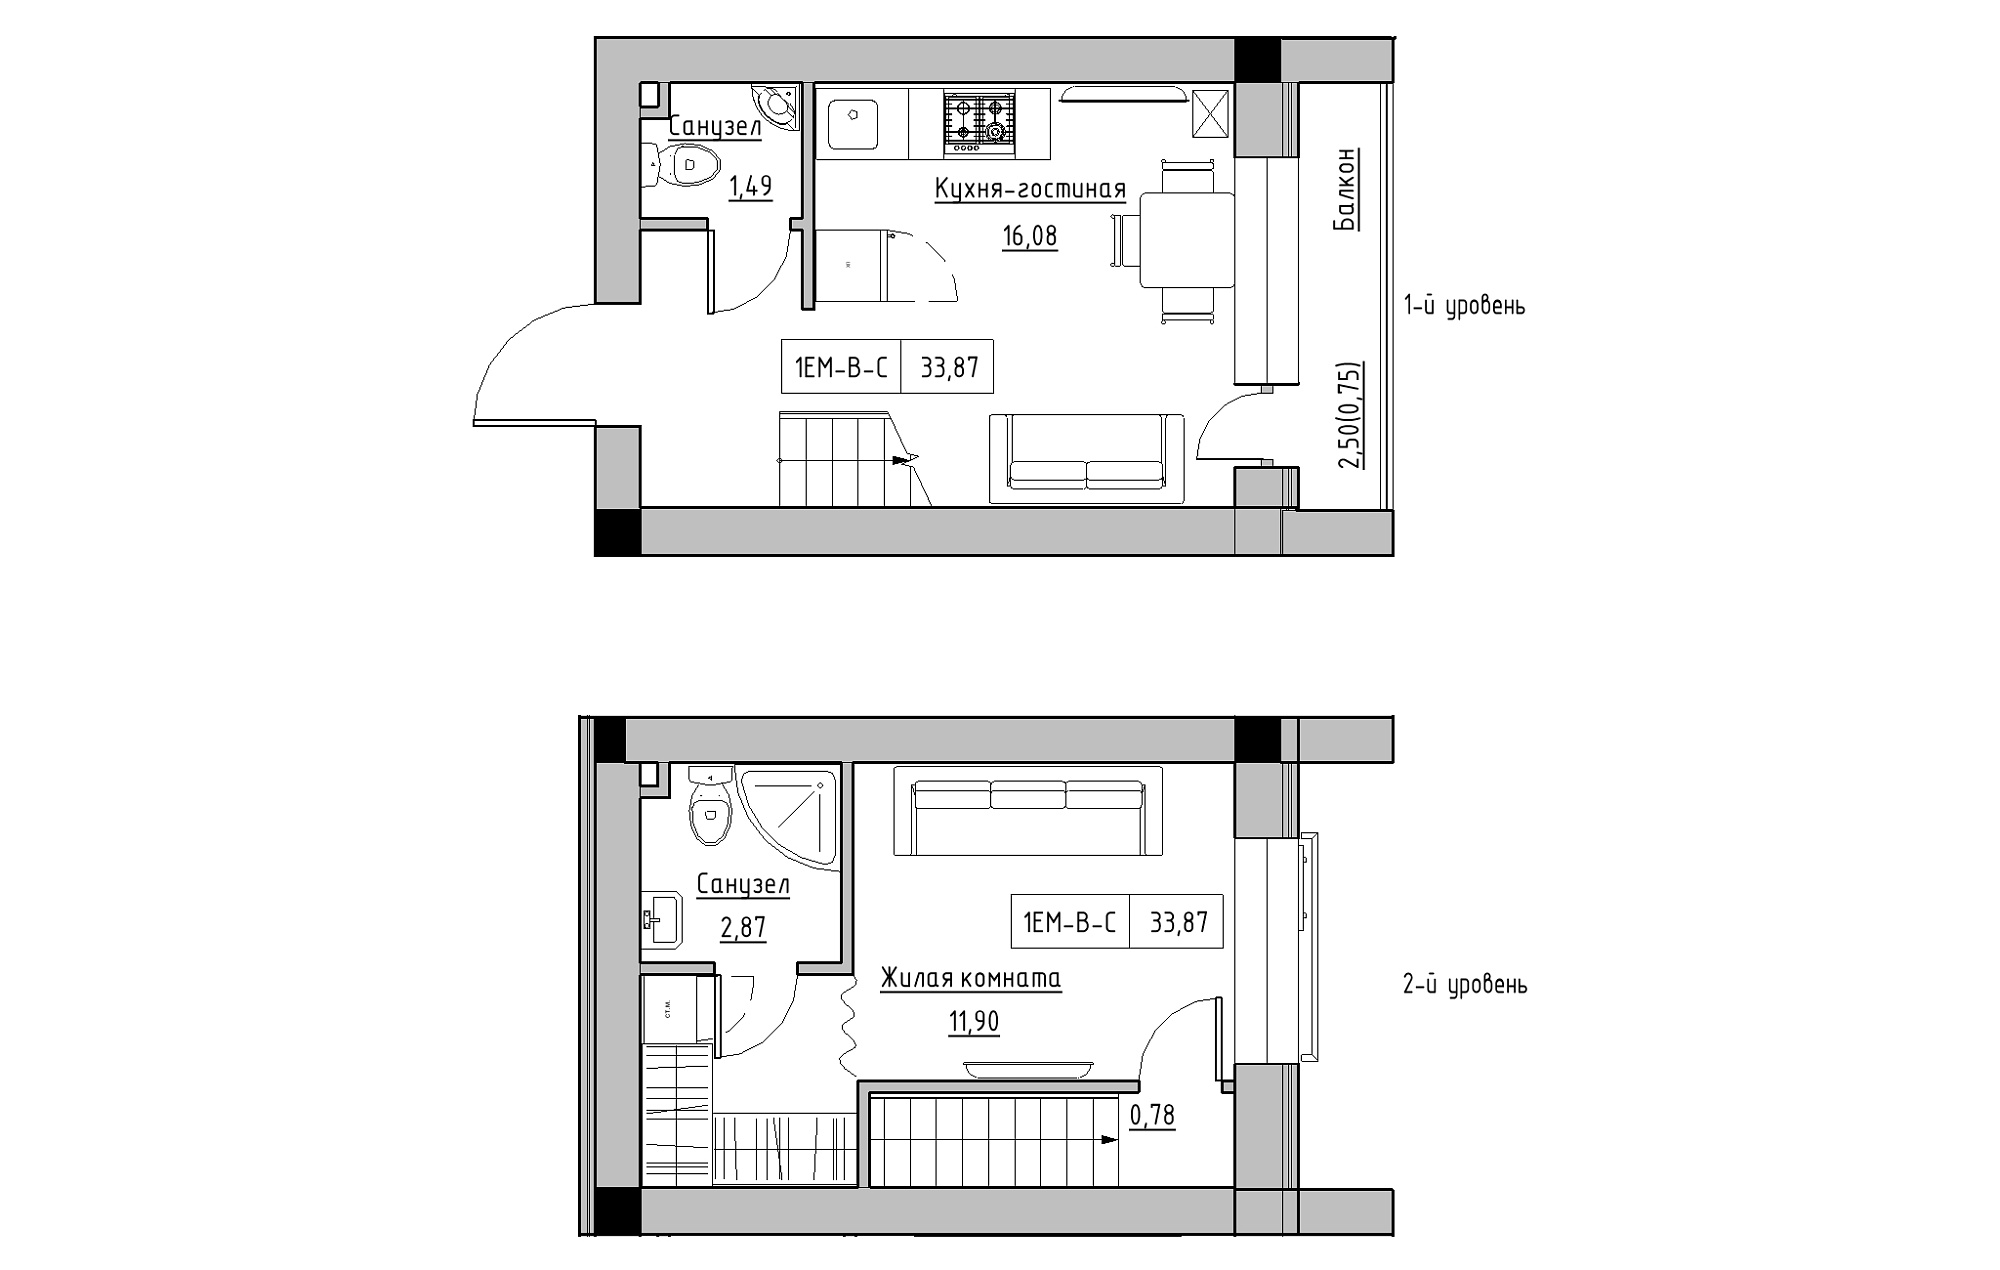 Planning 2-lvl flats area 33.87m2, KS-018-05/0012.